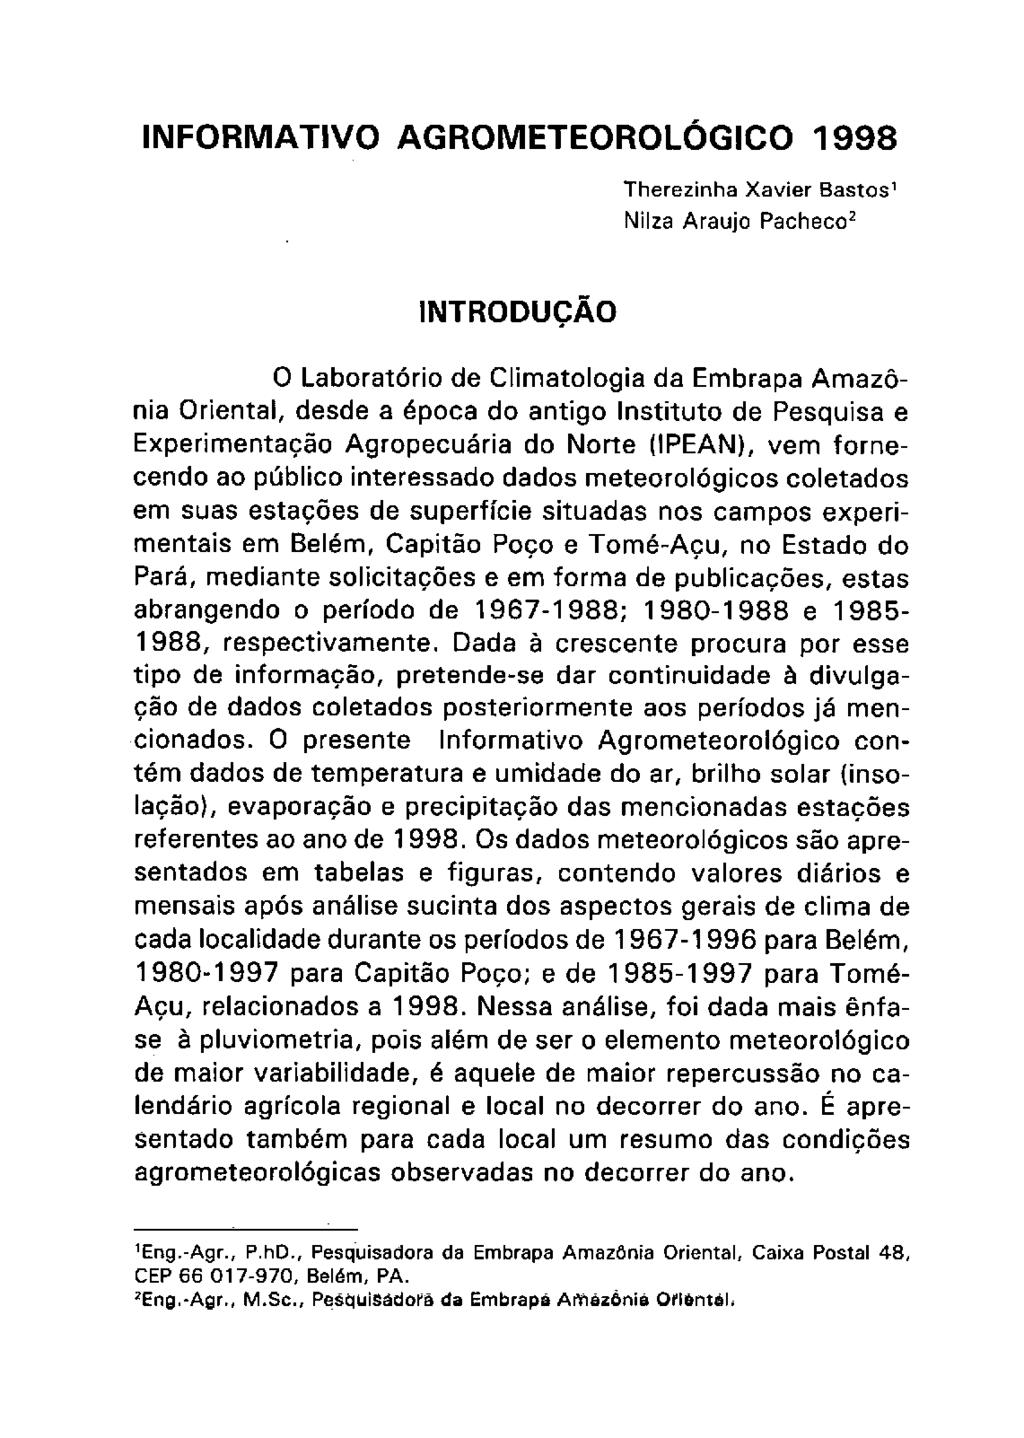 INFORMATIVO AGROMETEOROLÓGICO 1998 Therezinha Xavier Bastos 1 NiIza Araujo Pacheco 2 INTRODUÇÃO O Laboratório de Climatologia da Embrapa Amazônia Oriental, desde a época do antigo Instituto de